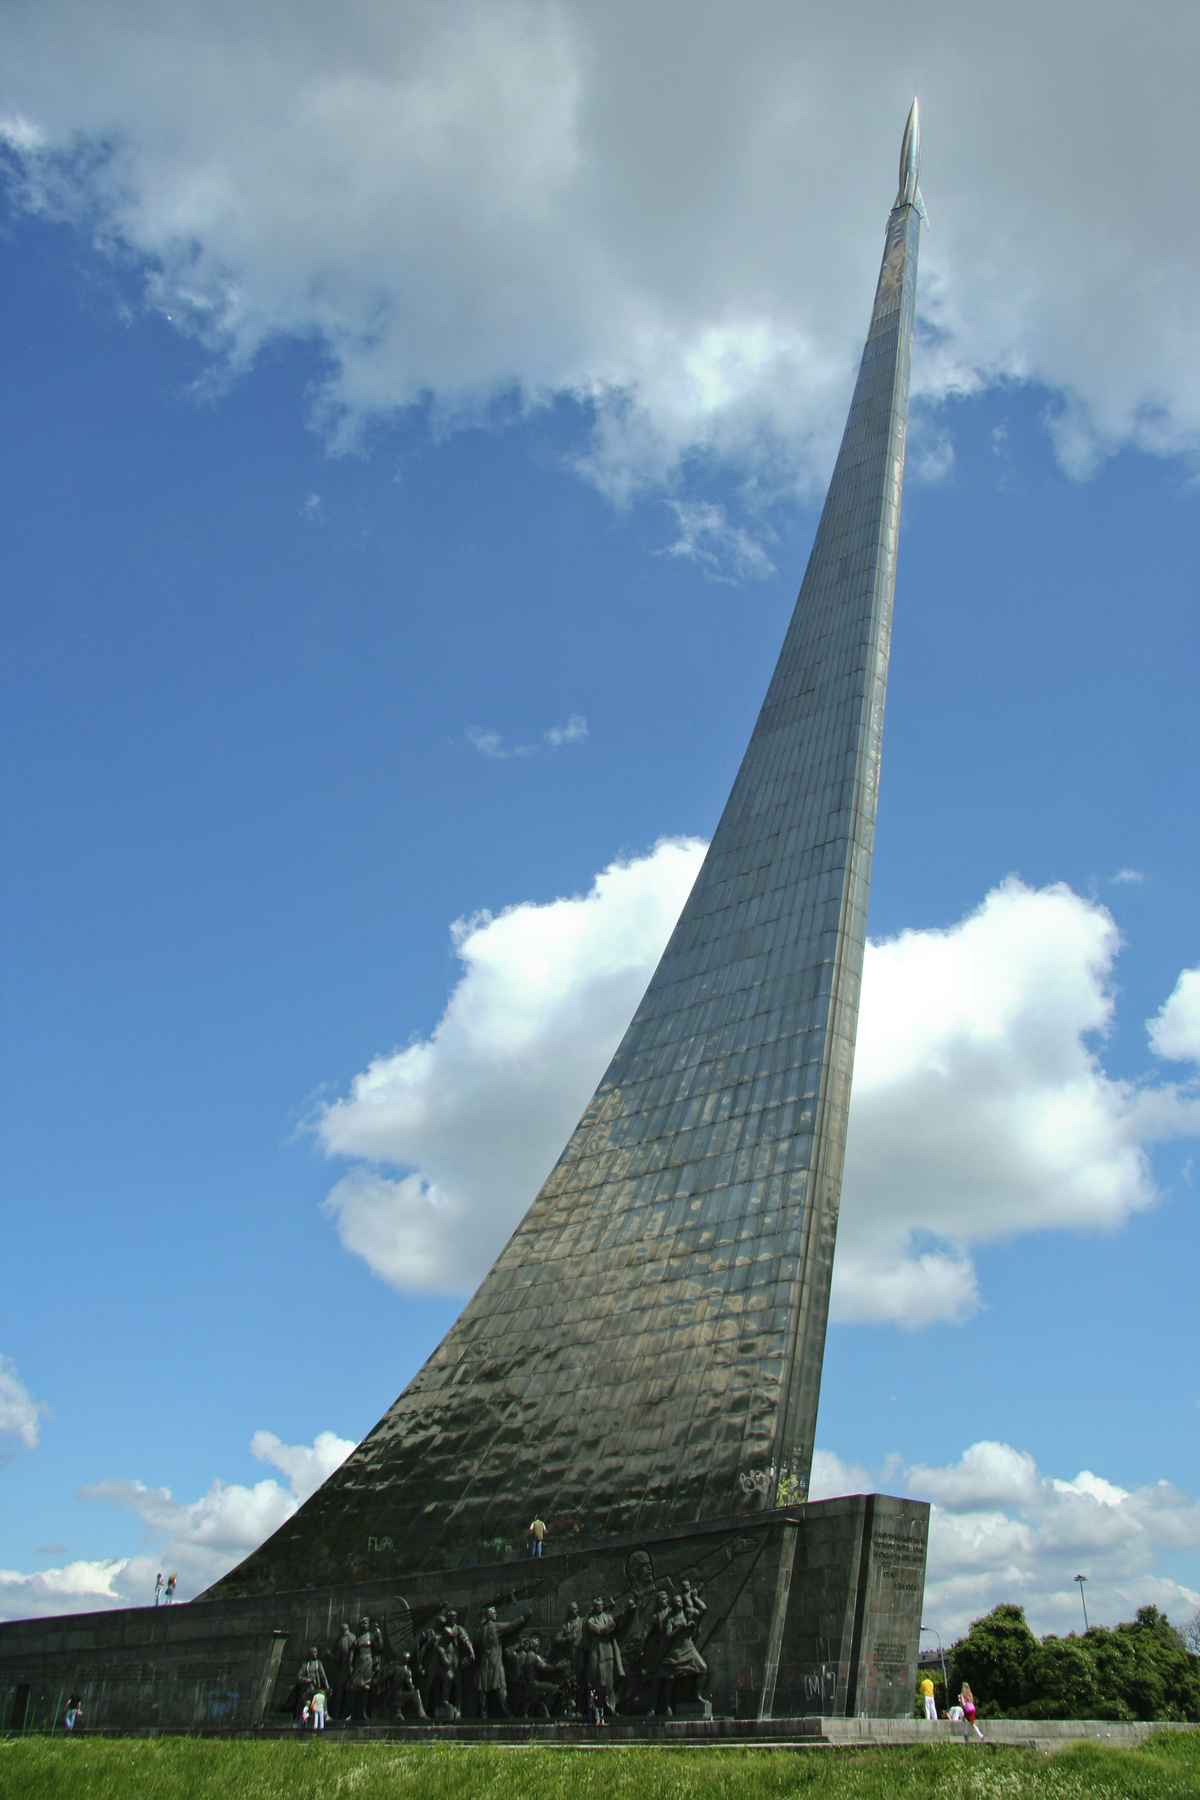 A Kijevben található, 1971-ben épült Tudományos Intézet jó példája az építészeti tér fogalmának és kiválóan jellemzi a Szovjetunió kozmosz iránti megszállottságát.

